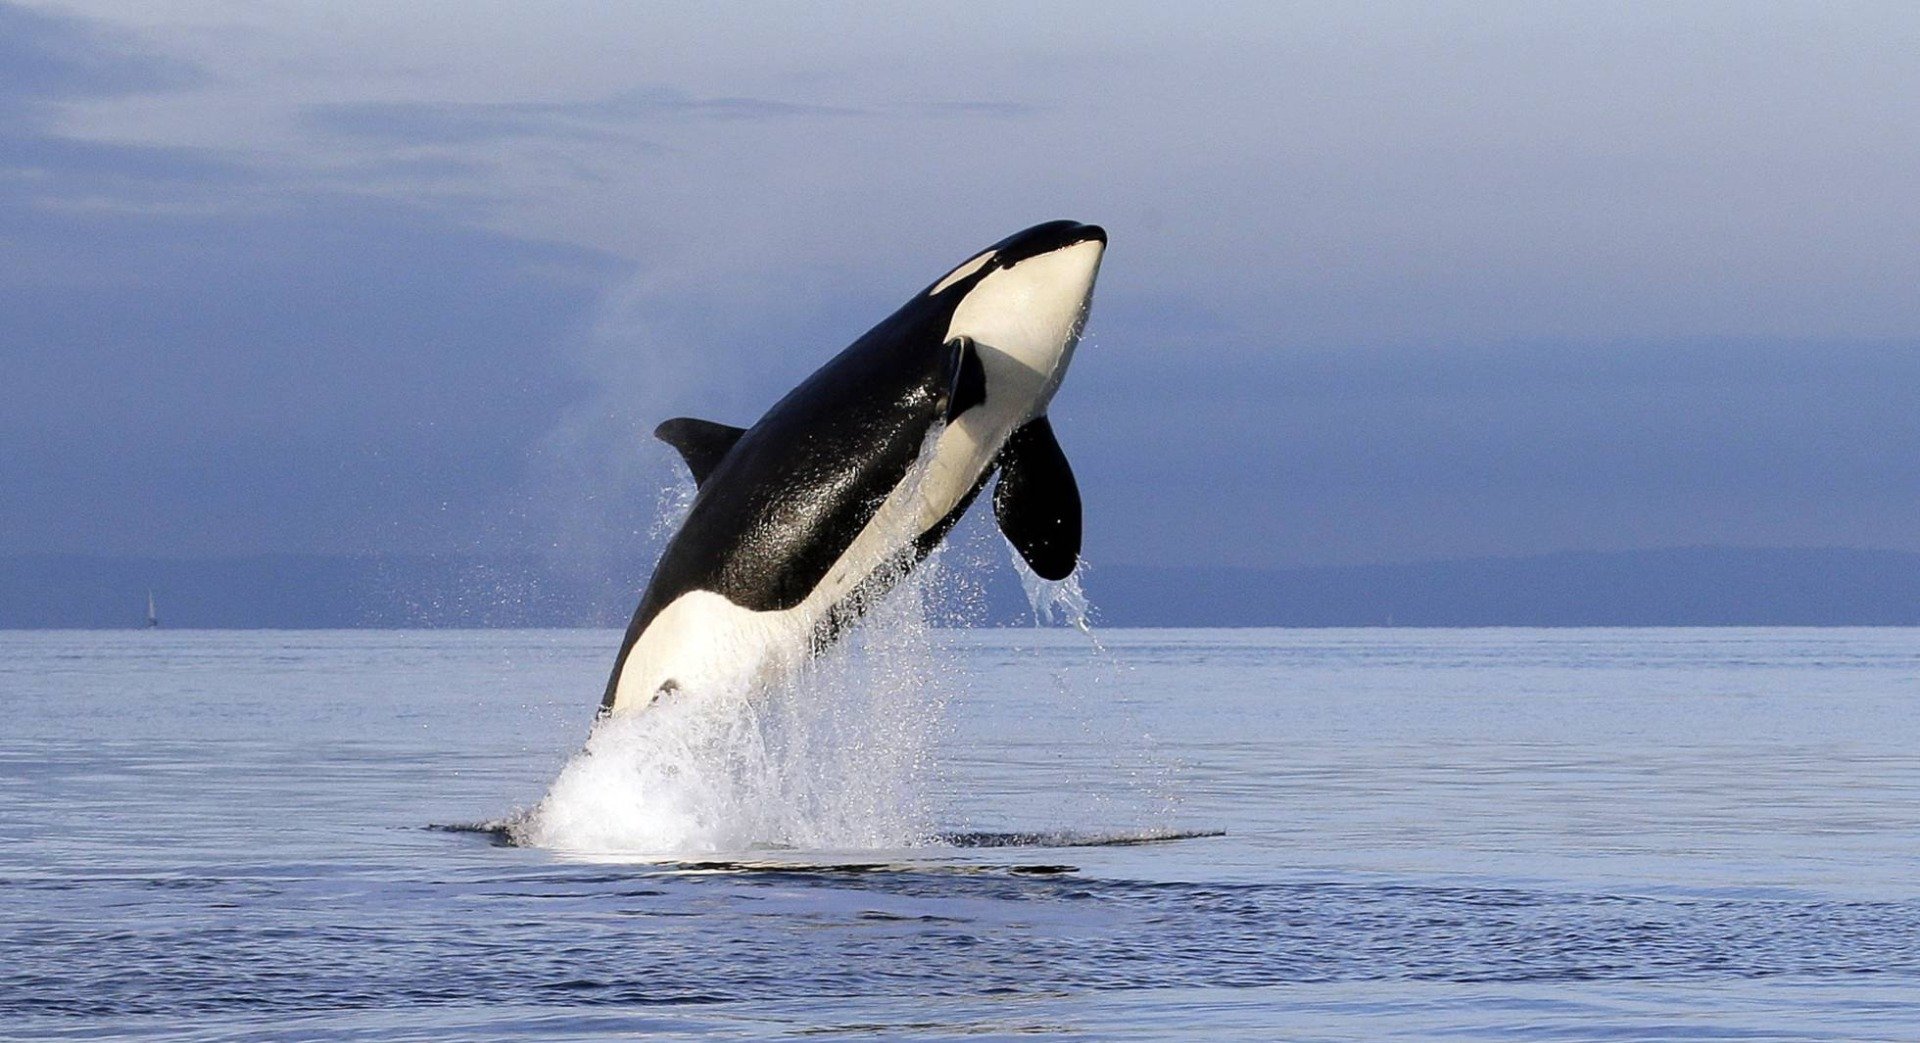 Há como fazer santuários onde orcas e belugas possam se retirar do